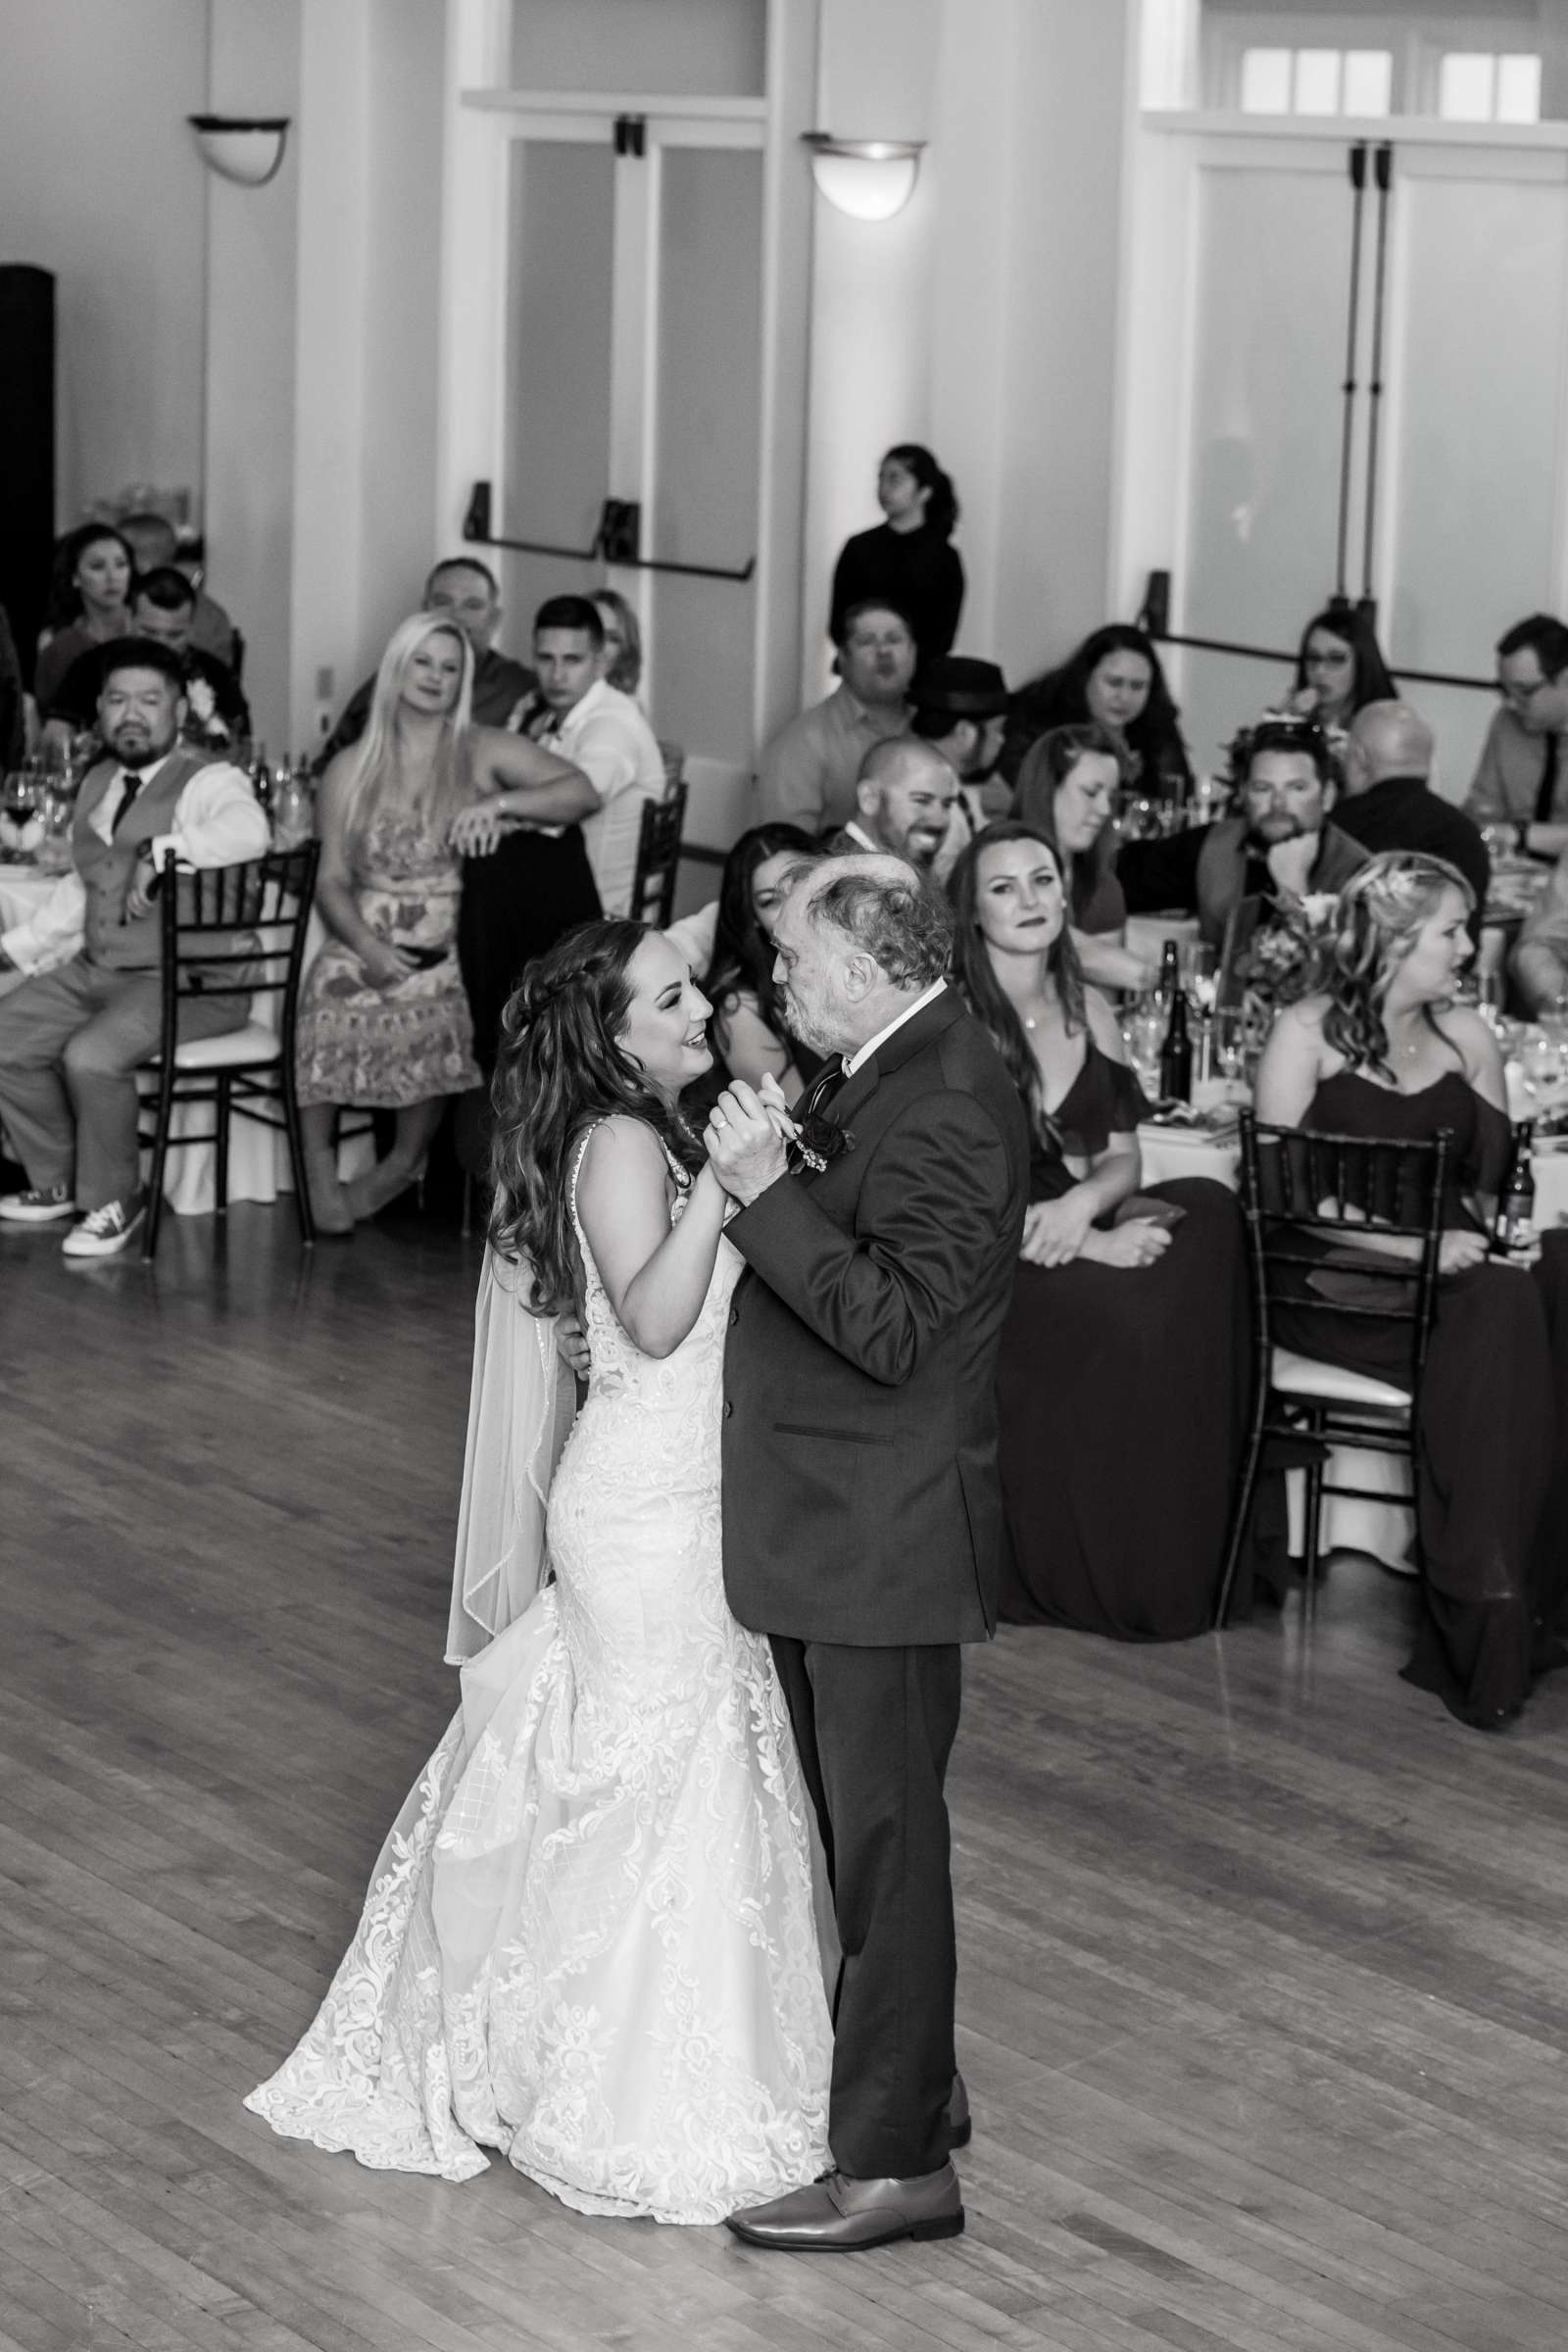 Cuvier Club Wedding, Rachel and Shawn Wedding Photo #94 by True Photography